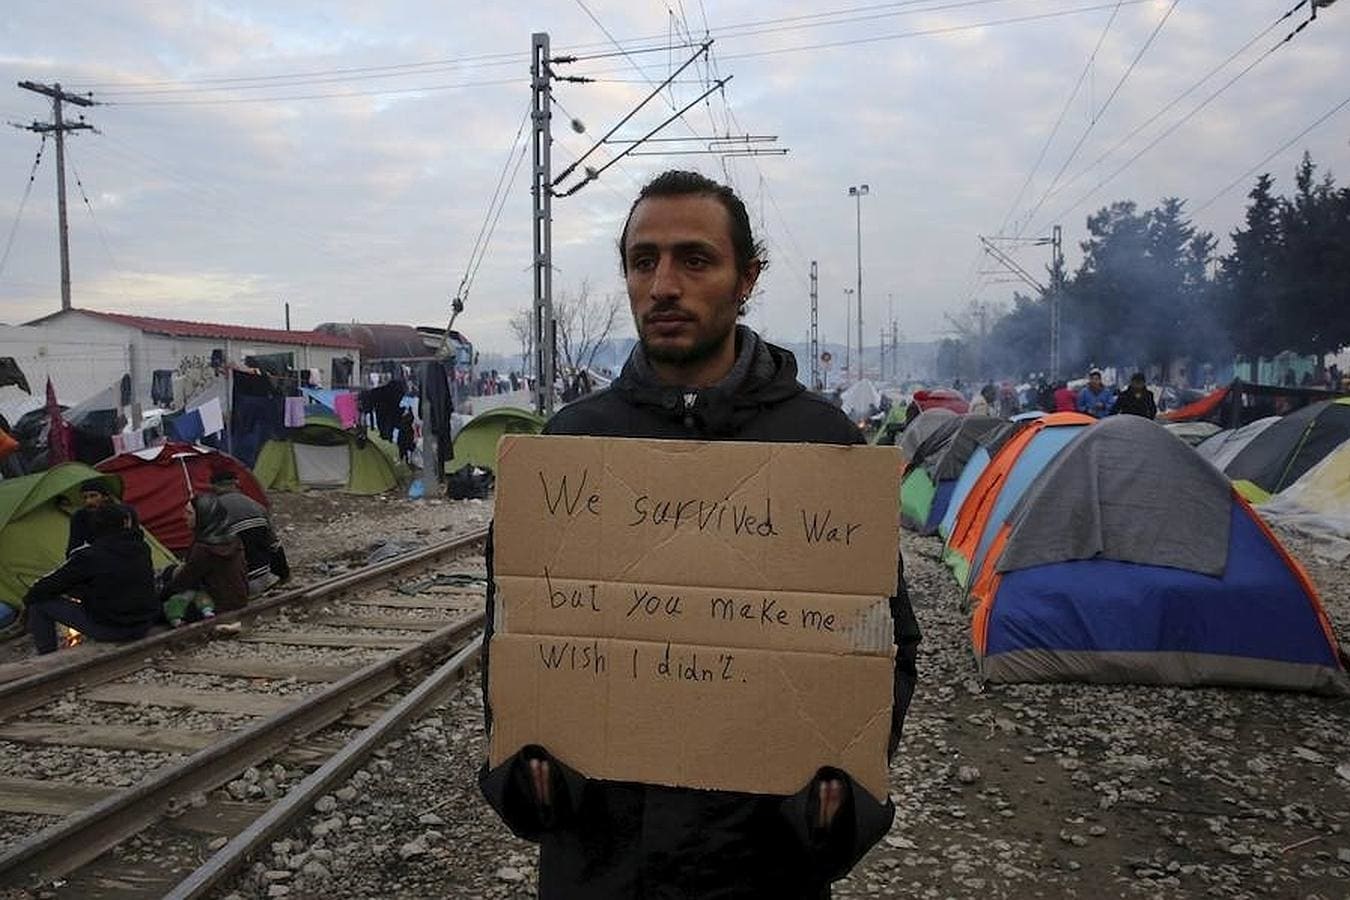 Un refugiado, en el improvisado campamento de Idomeni (Grecia, cerca de la frontera con Madedonia), llama la atención de Occidente con la siguiente pancarta: "Hemos sobrevivido a la guerra, pero me hacéis desear que no lo hubiéramos logrado"